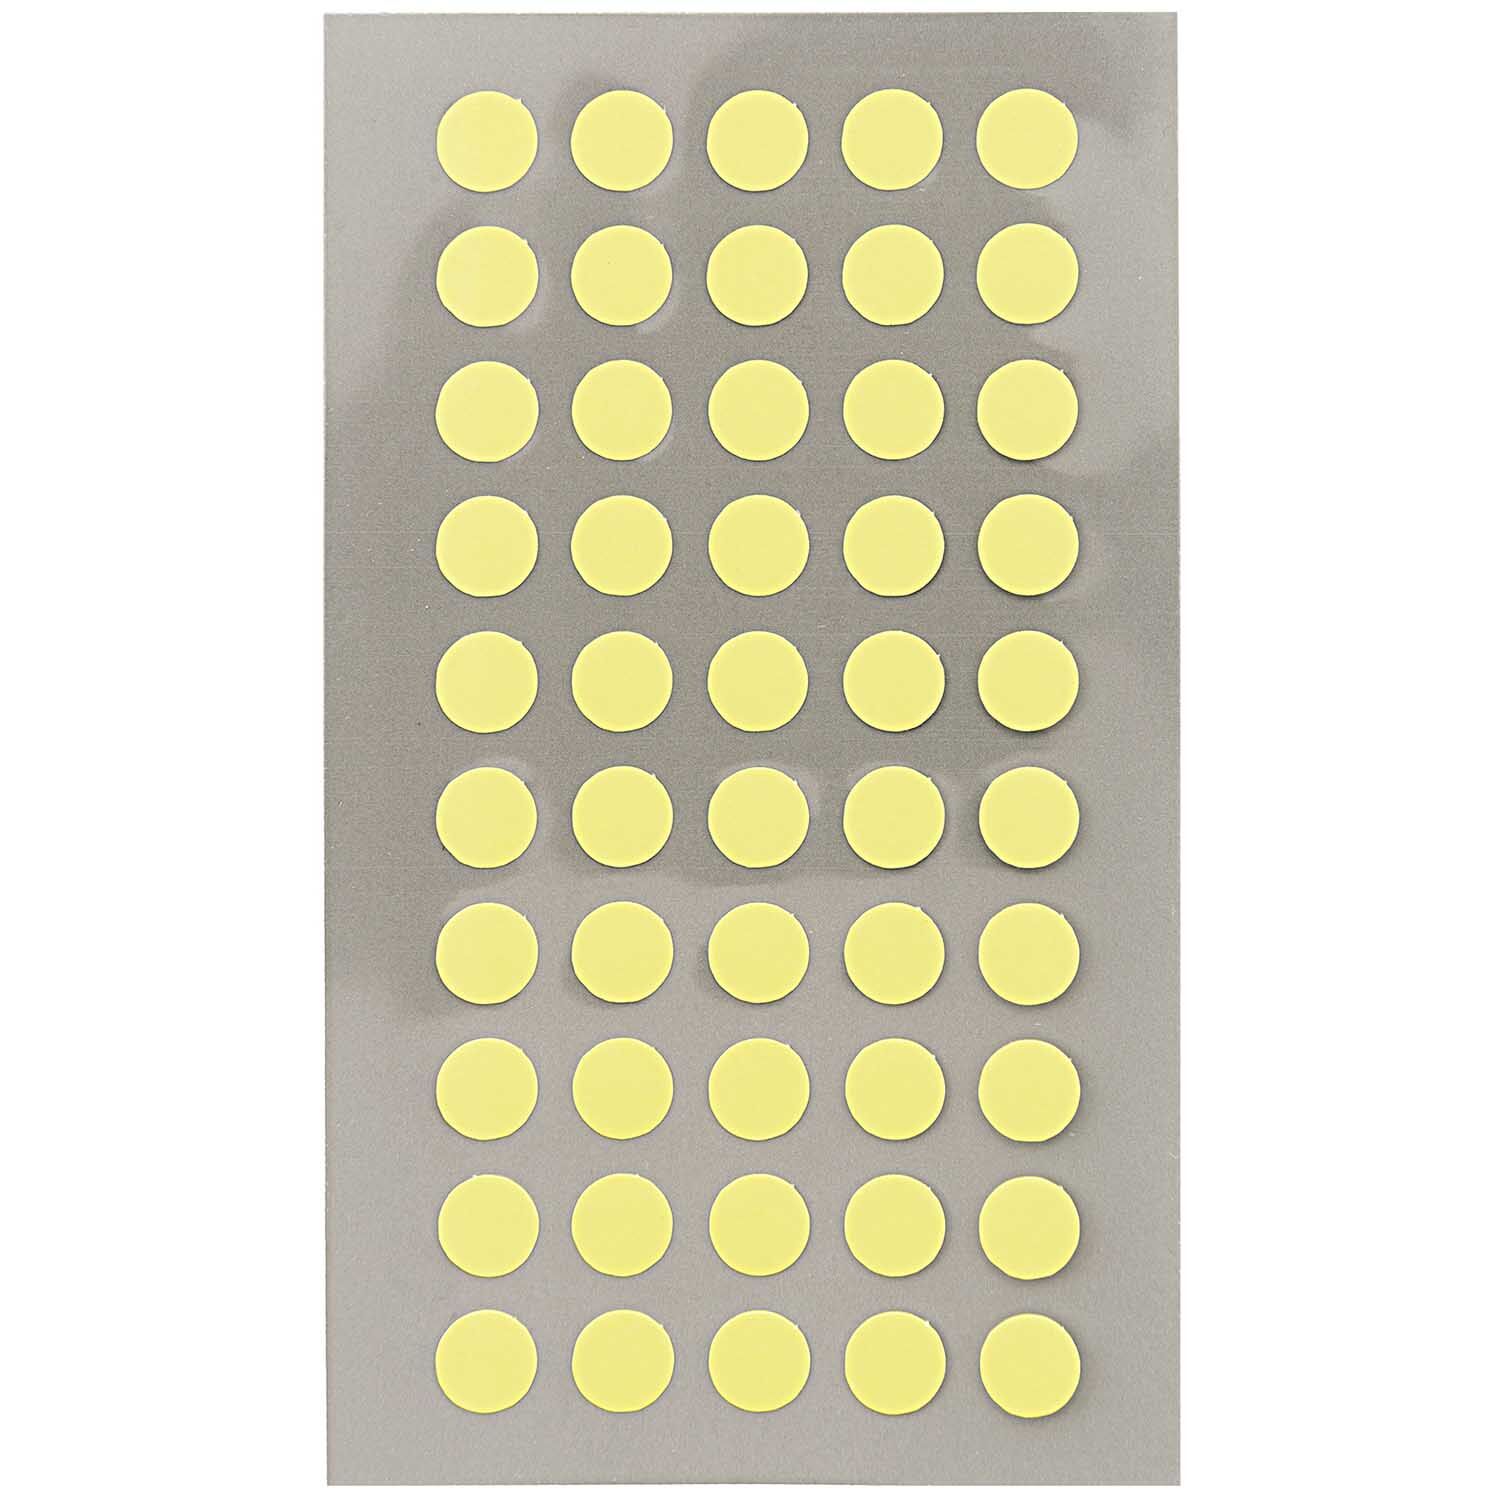 NEU Office Sticker, neon-gelbe Punkte, 8 mm, 4 Blatt